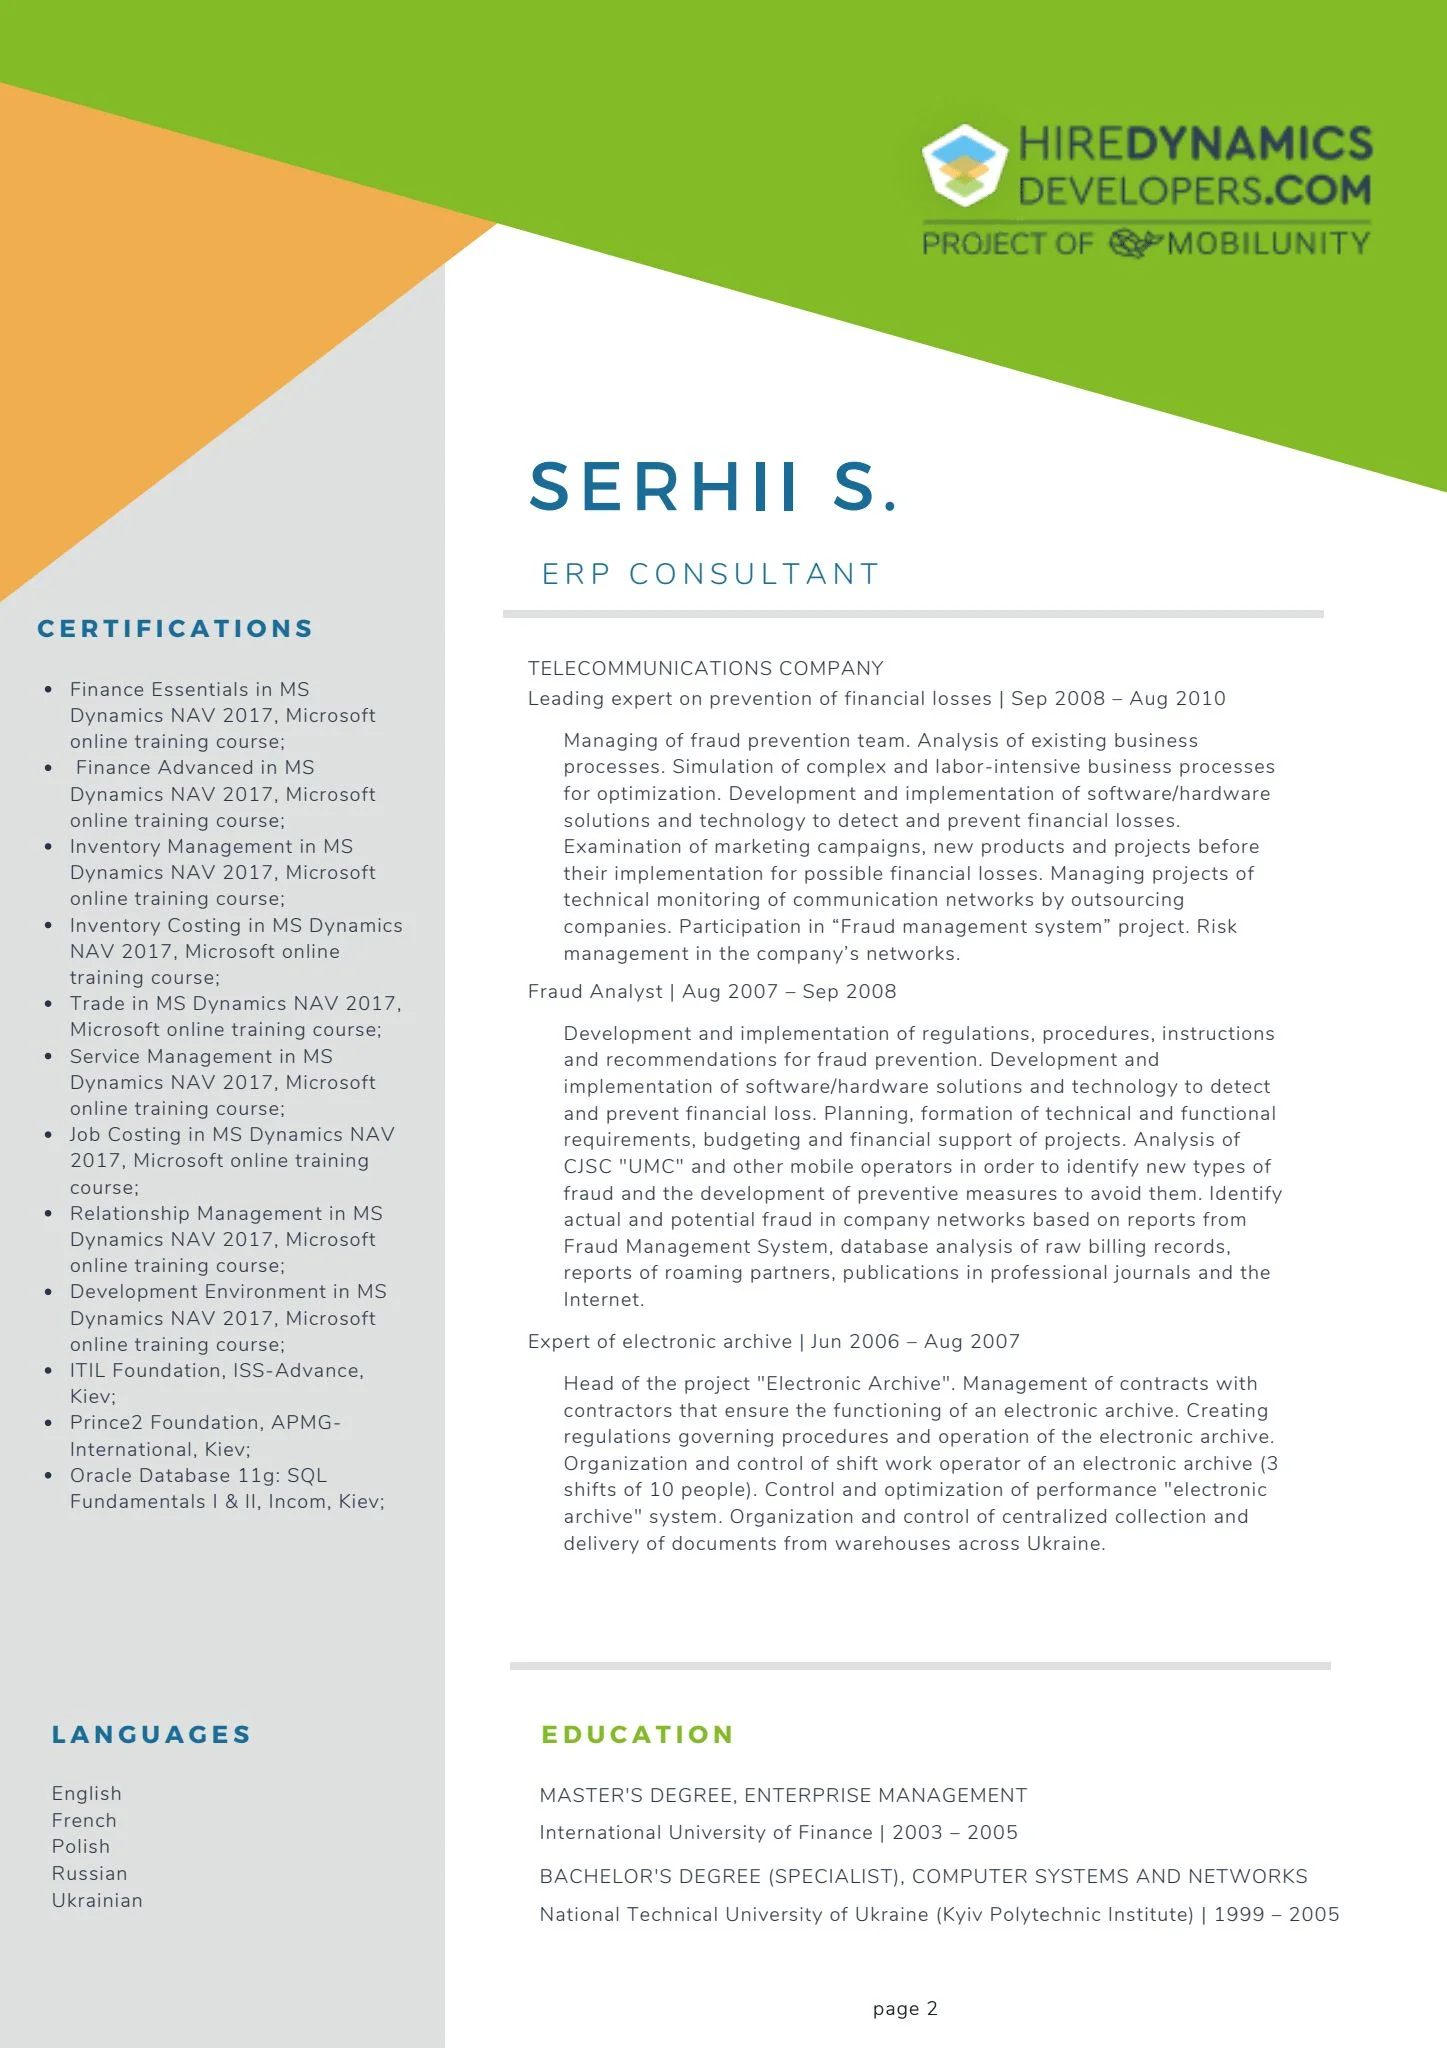 Serhii S. – ERP Consultant